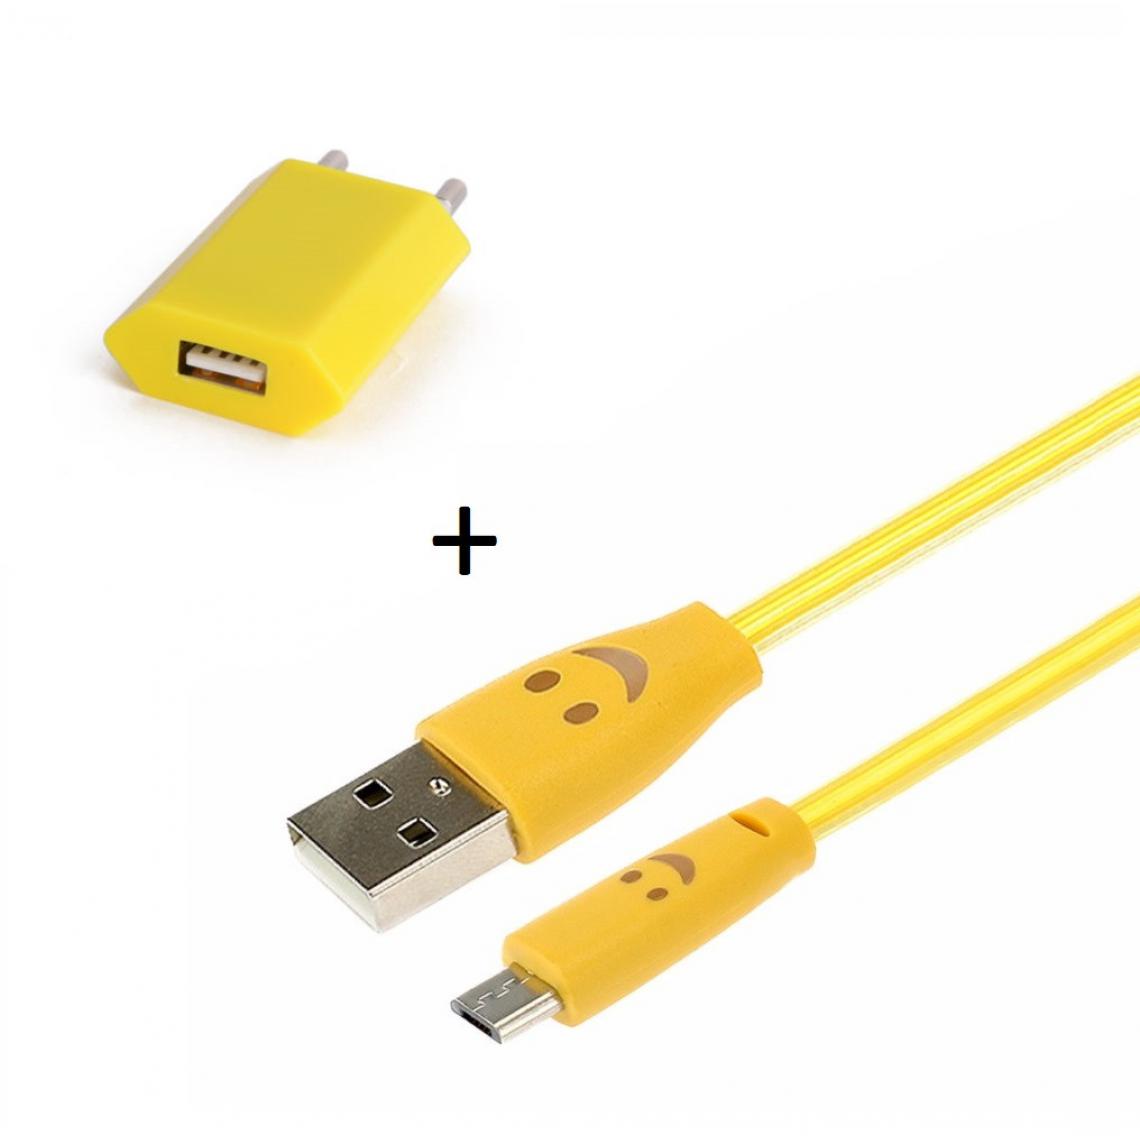 Shot - Pack Chargeur pour JBL GO 2 Smartphone Micro USB (Cable Smiley LED + Prise Secteur USB) Android (JAUNE) - Chargeur secteur téléphone